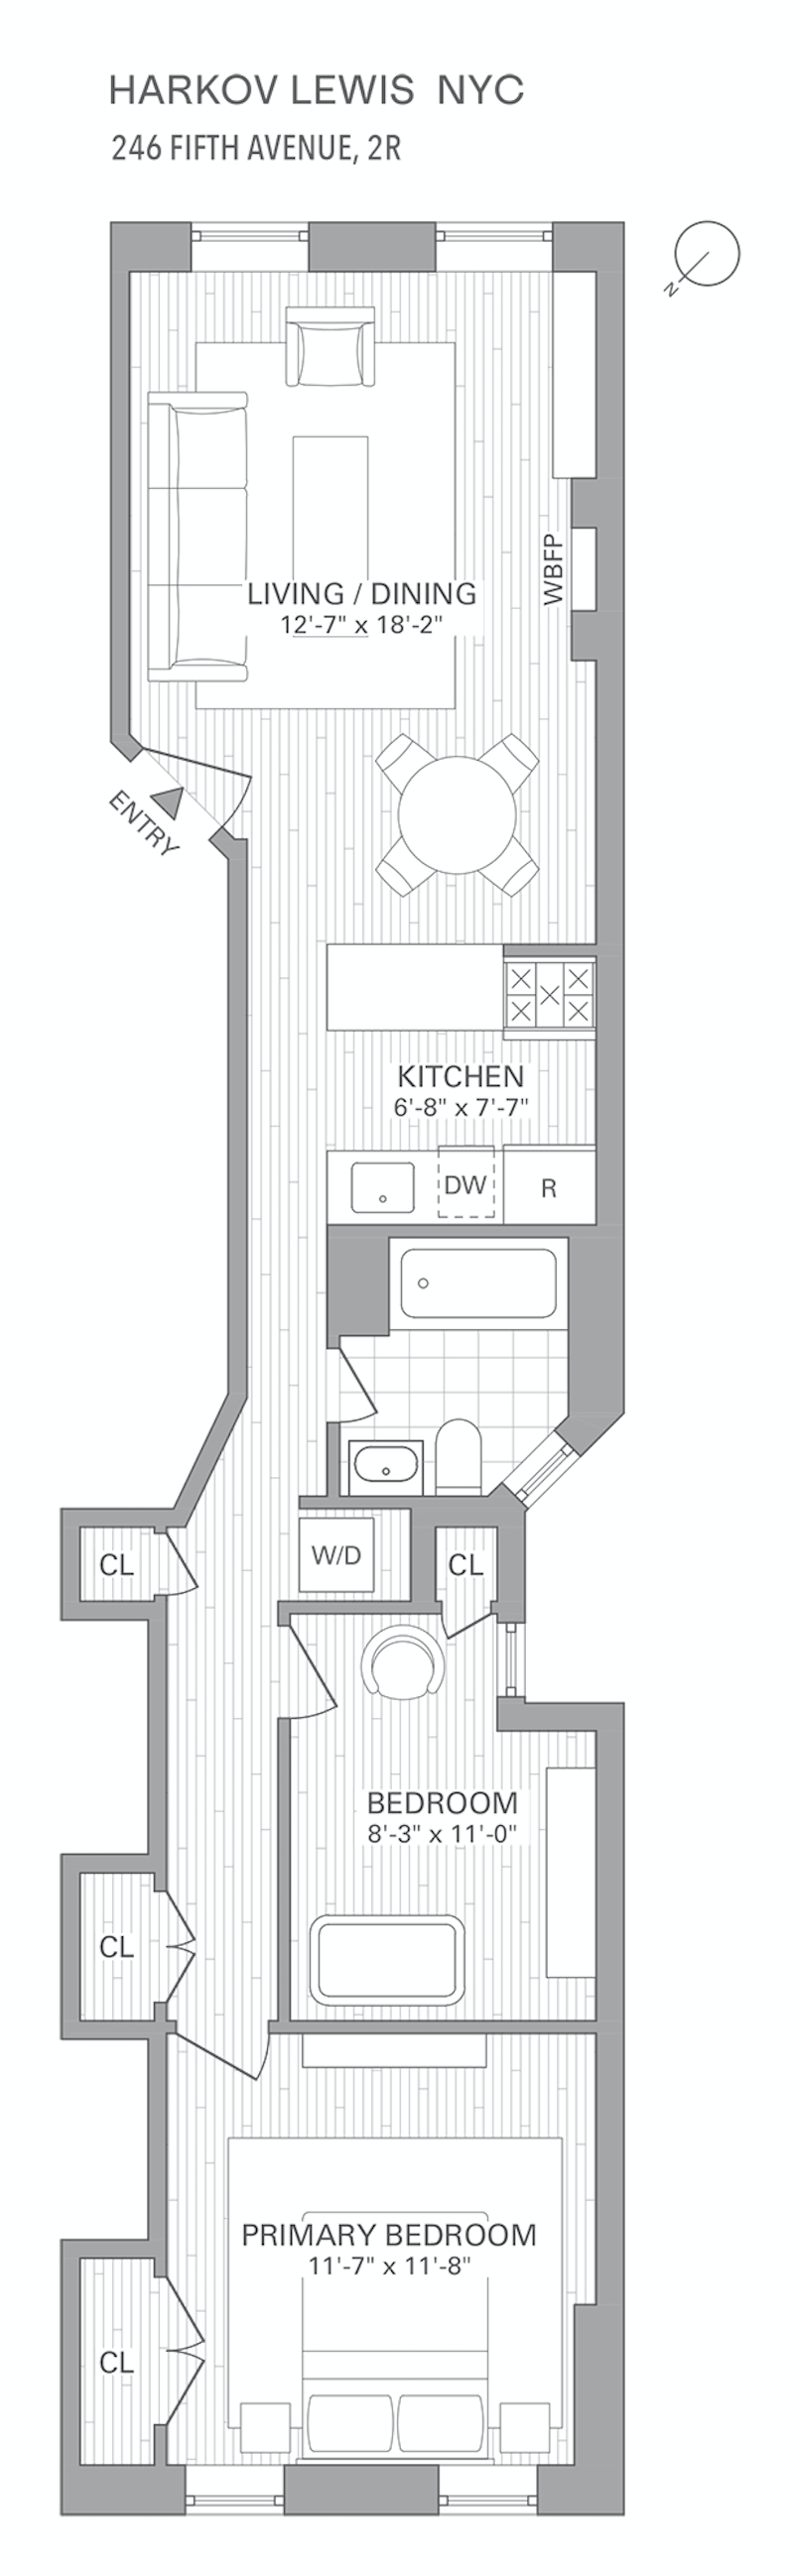 Floorplan for 246 Fifth Avenue, 2R